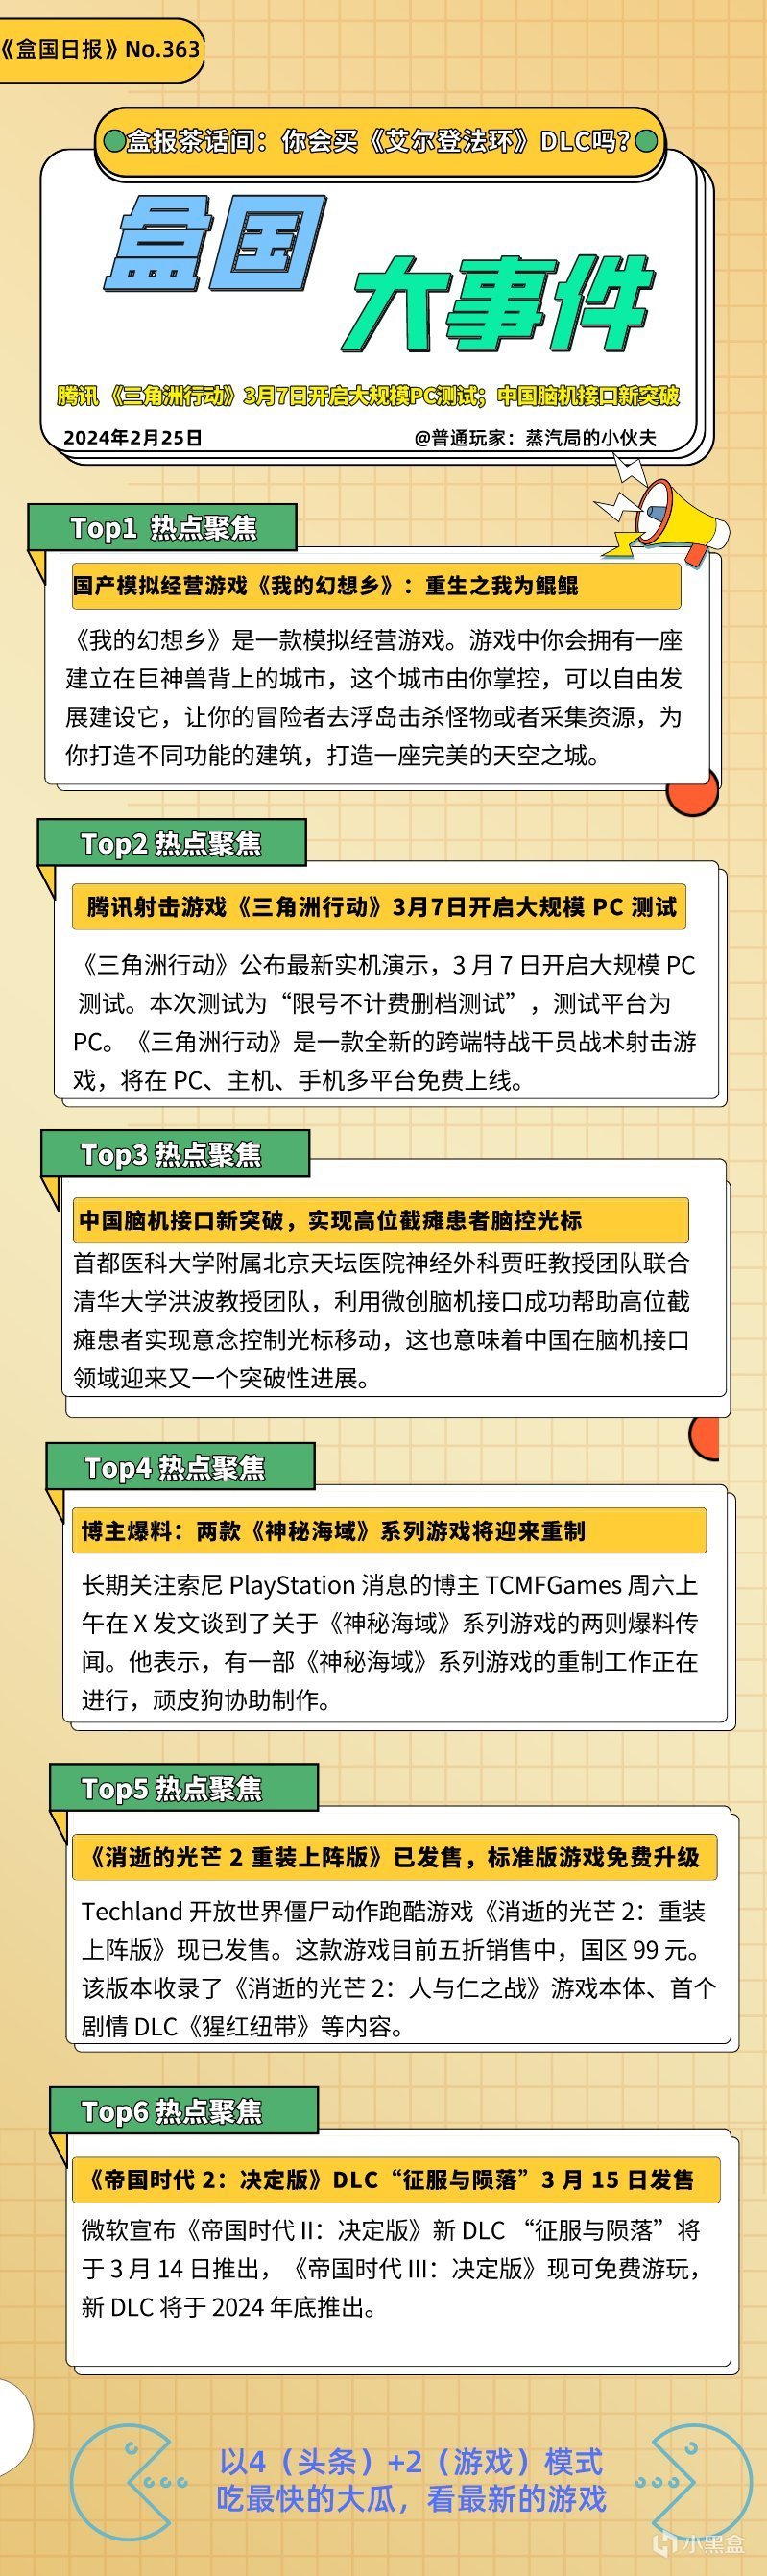 【PC游戏】腾讯 《三角洲行动》PC测试定档3月7日；中国脑机接口技术新突破